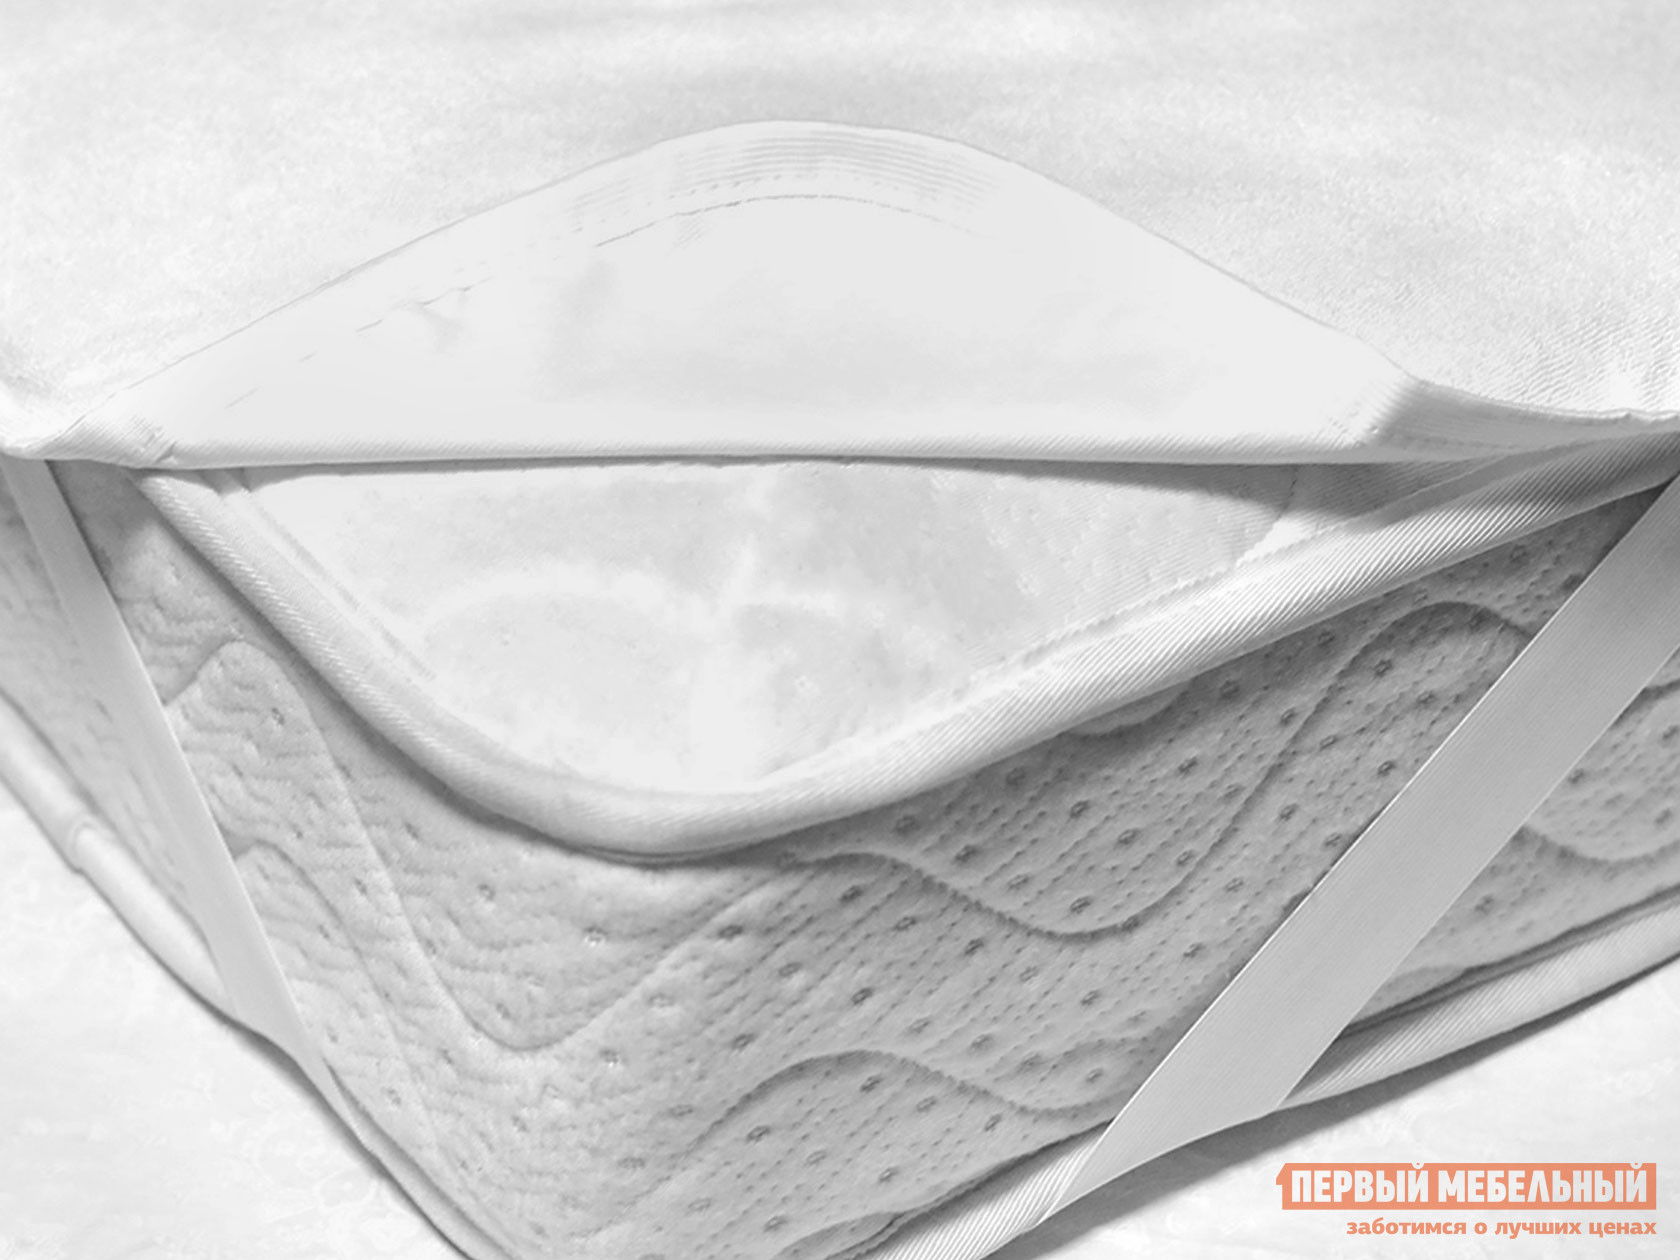 Чехол для матраса  Фулл протекшн на резинке Белый махровый, 900 Х 2000 мм от Первый Мебельный